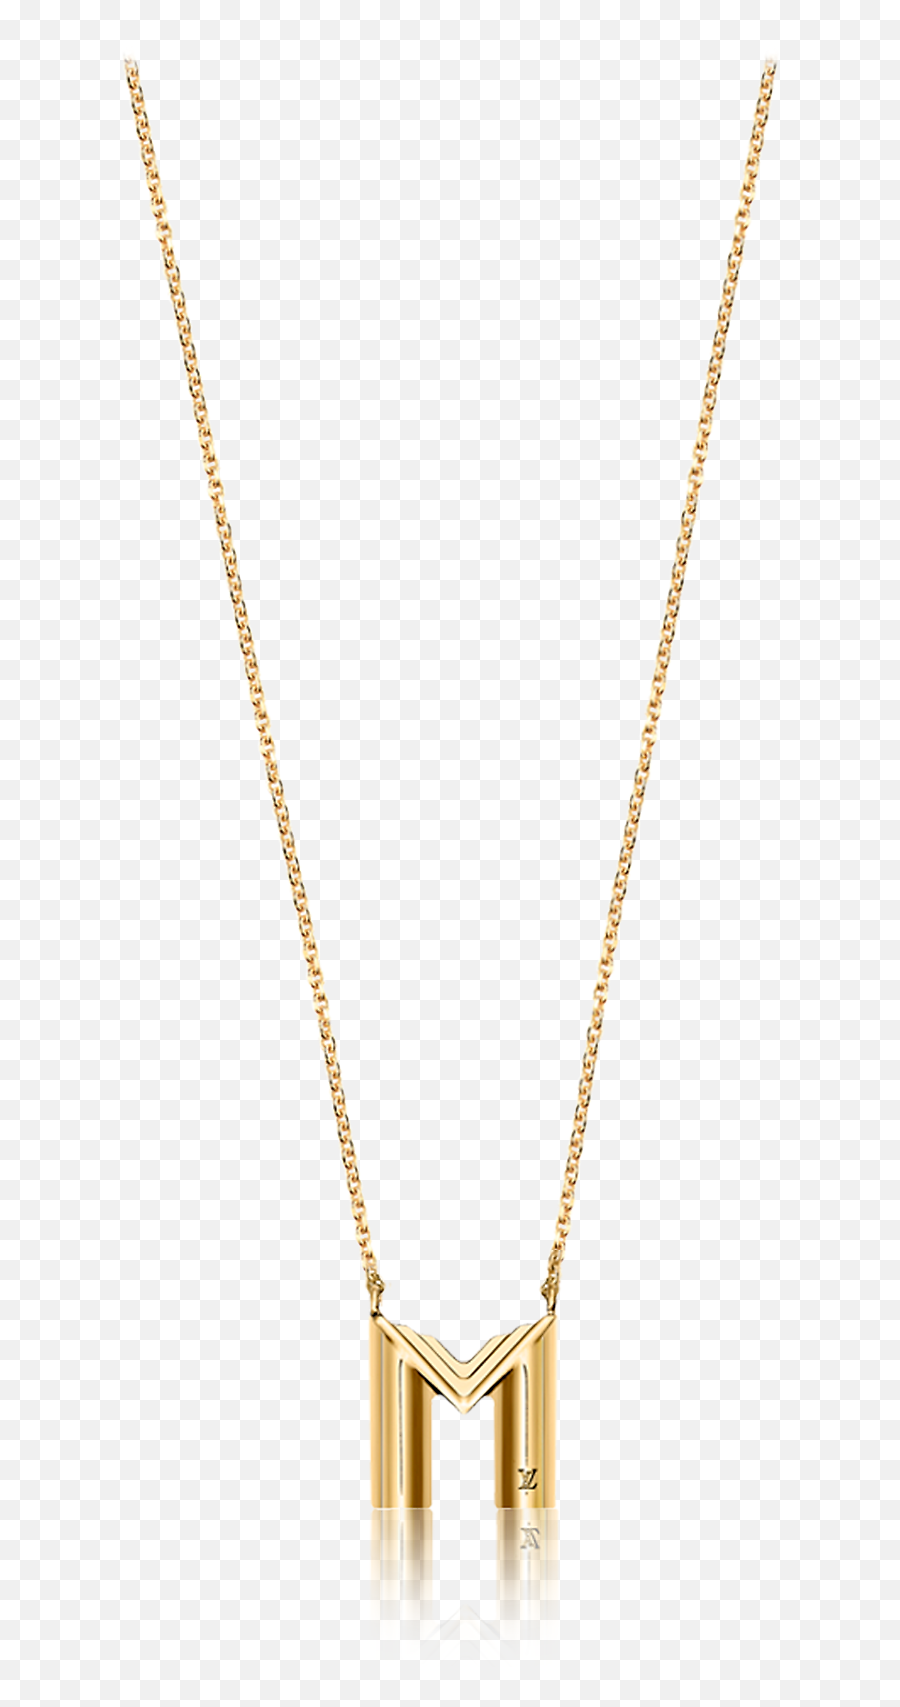 Lv U0026 Me Necklace Letter M - Accessories Louis Vuitton Pendant Png,M&m Logo Png